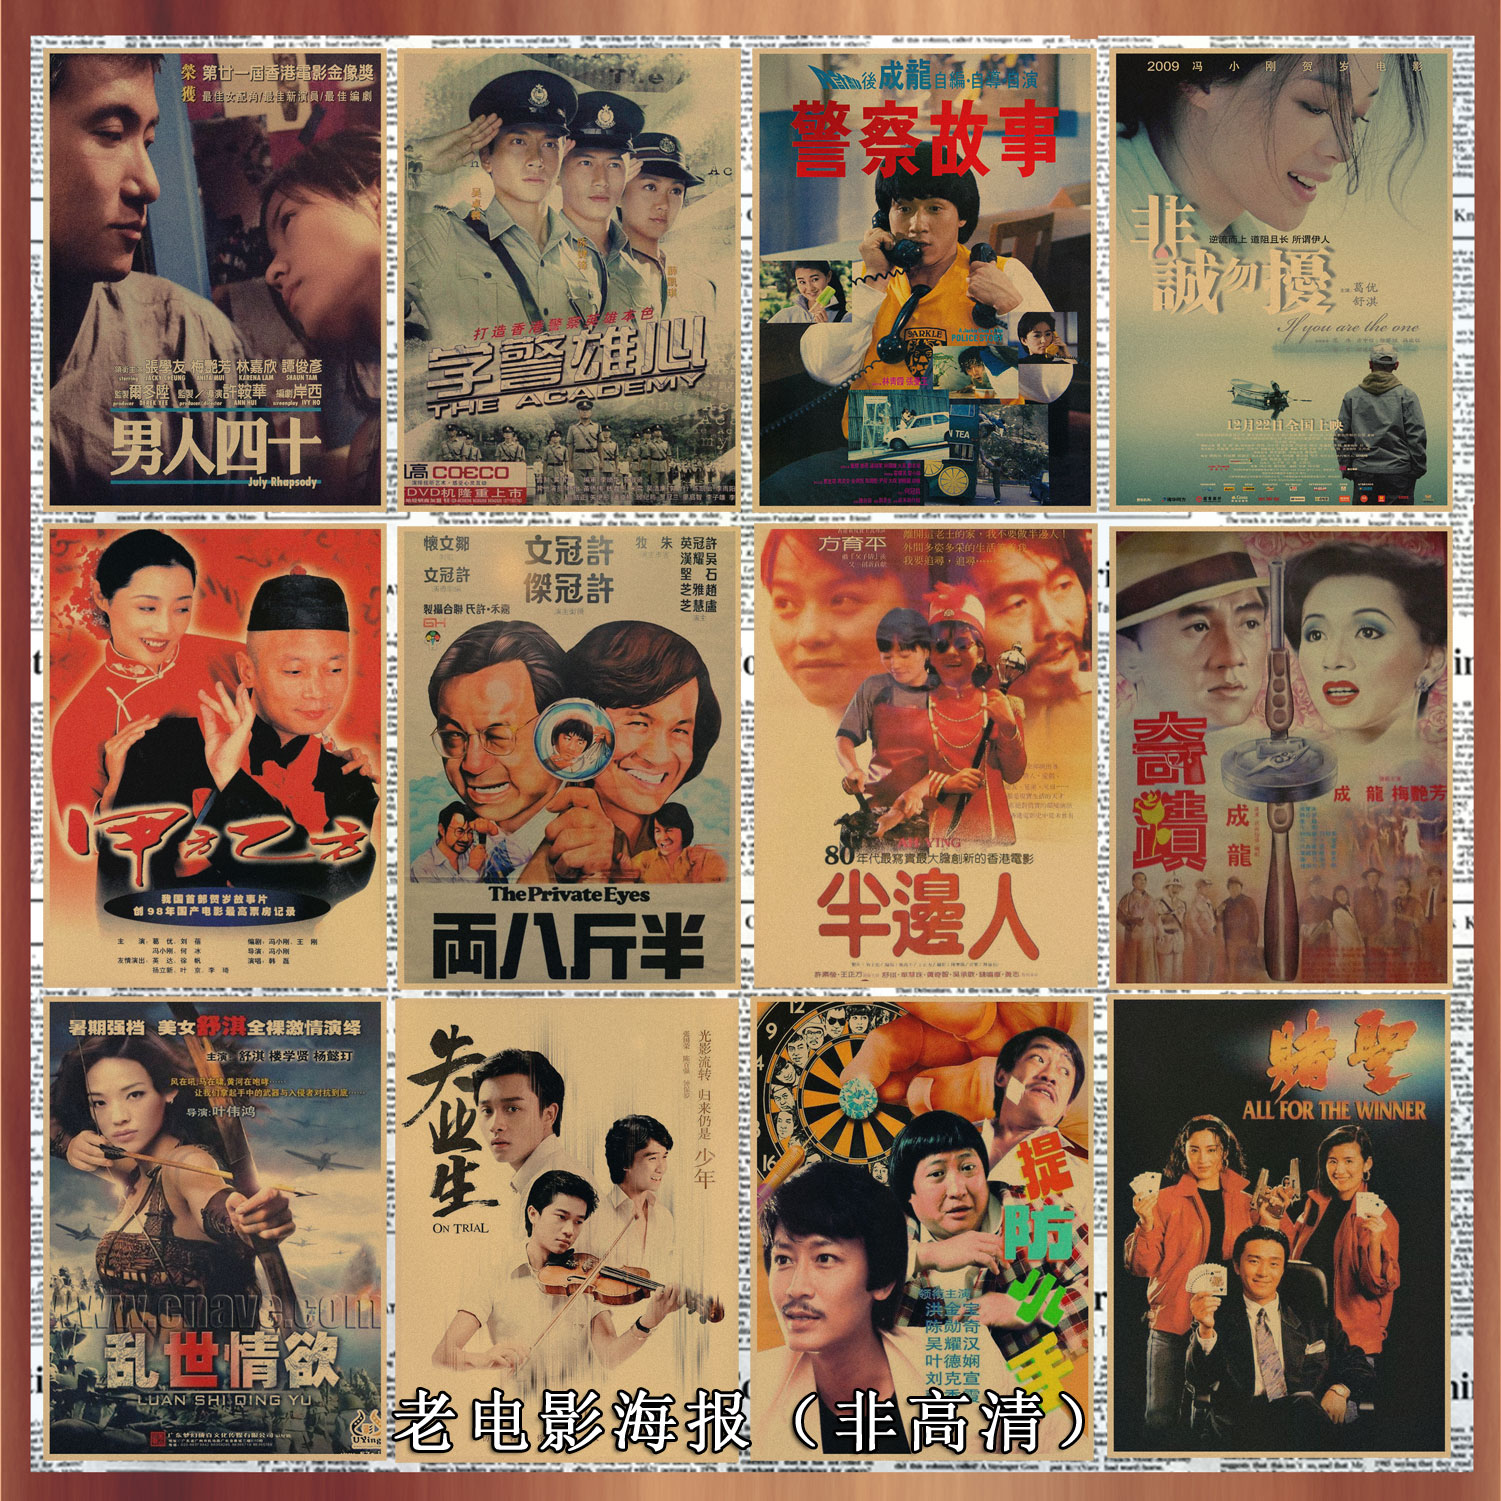 共742 件香港电影海报相关商品